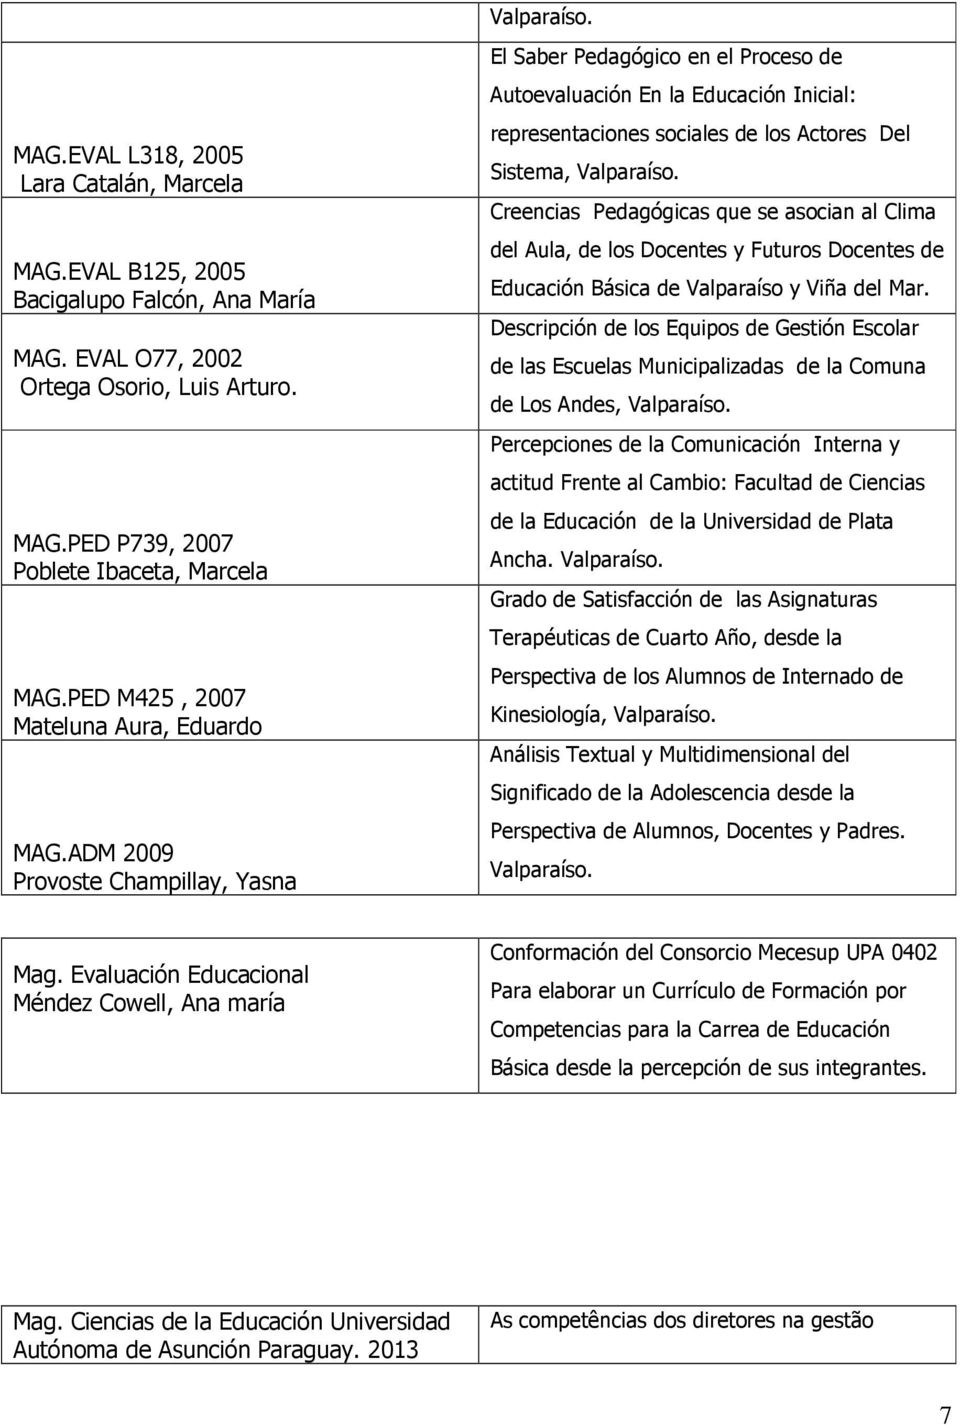 ADM 2009 Provoste Champillay, Yasna El Saber Pedagógico en el Proceso de Autoevaluación En la Educación Inicial: representaciones sociales de los Actores Del Sistema, Valparaíso.